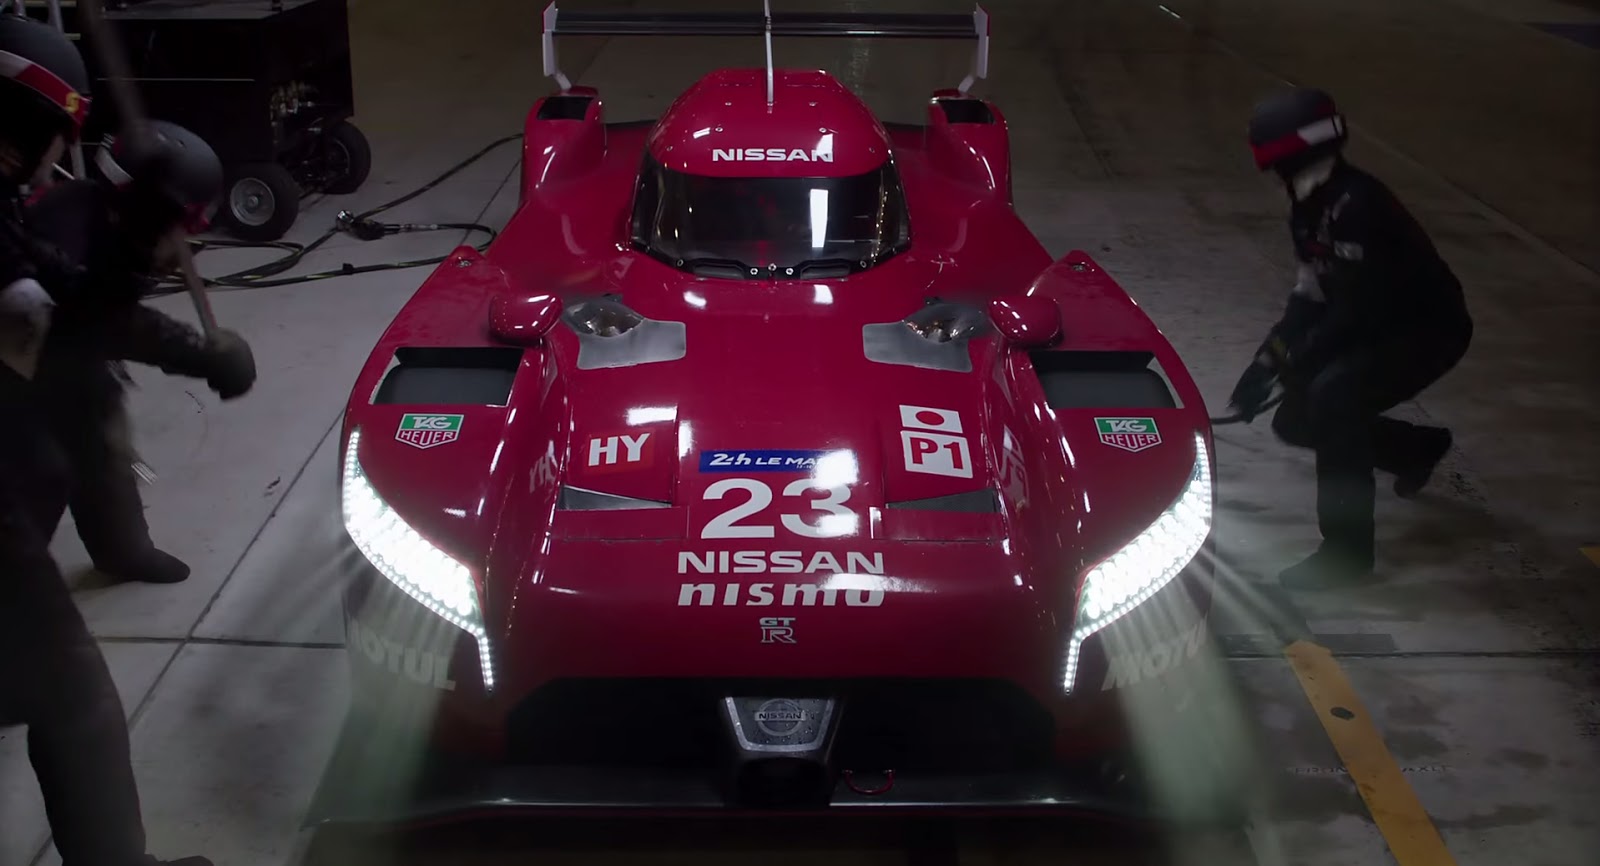 International, Nissan GT-R LM Nismo: Nissan Maxima 2016 Versi Produksi Muncul di Iklan Superbowl